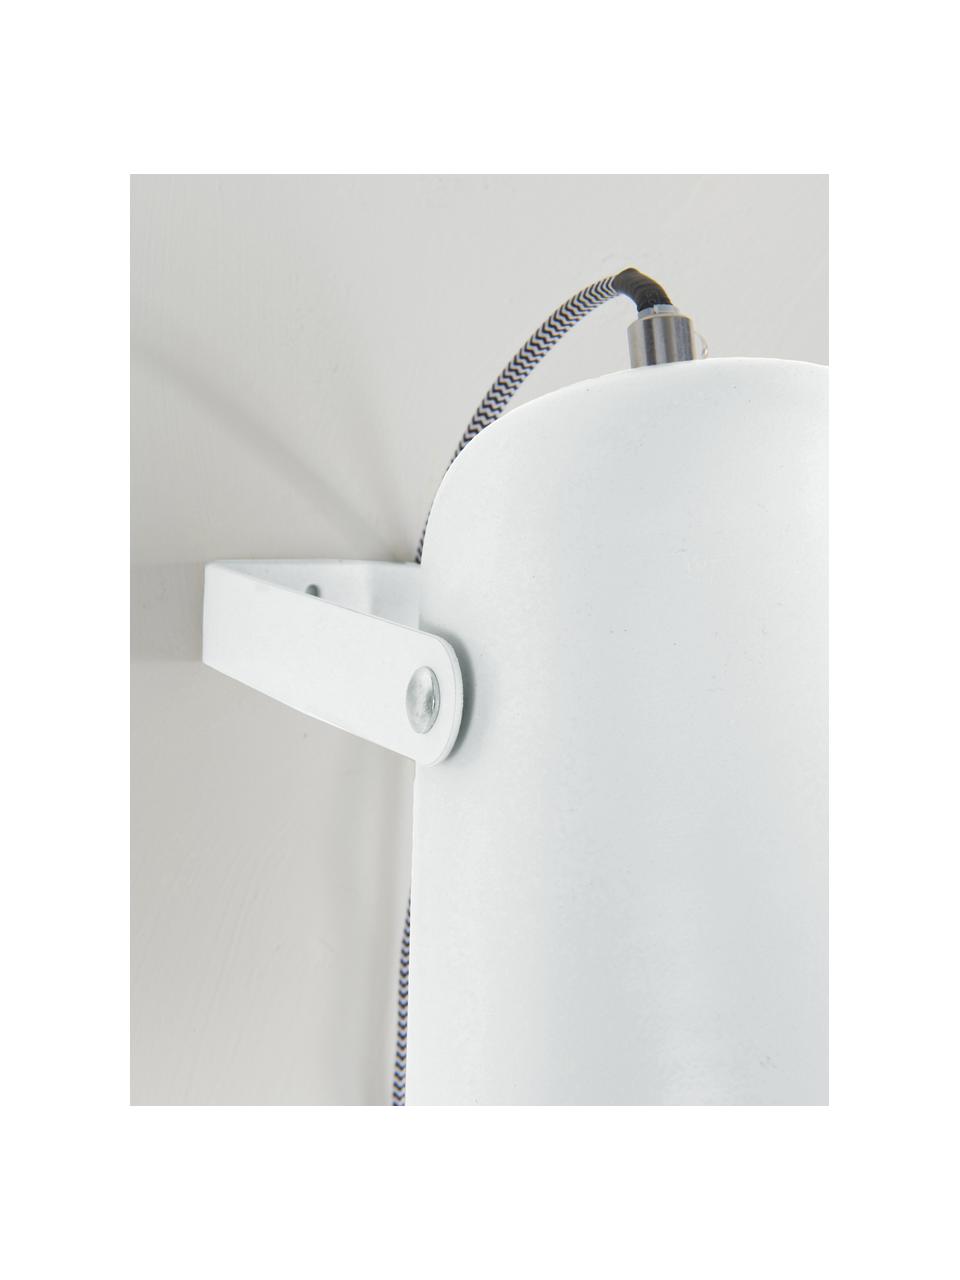 Wandleuchte Iluminar mit Stecker in Weiß, Lampenschirm: Metall, lackiert, Weiß, T 21 x H 18 cm